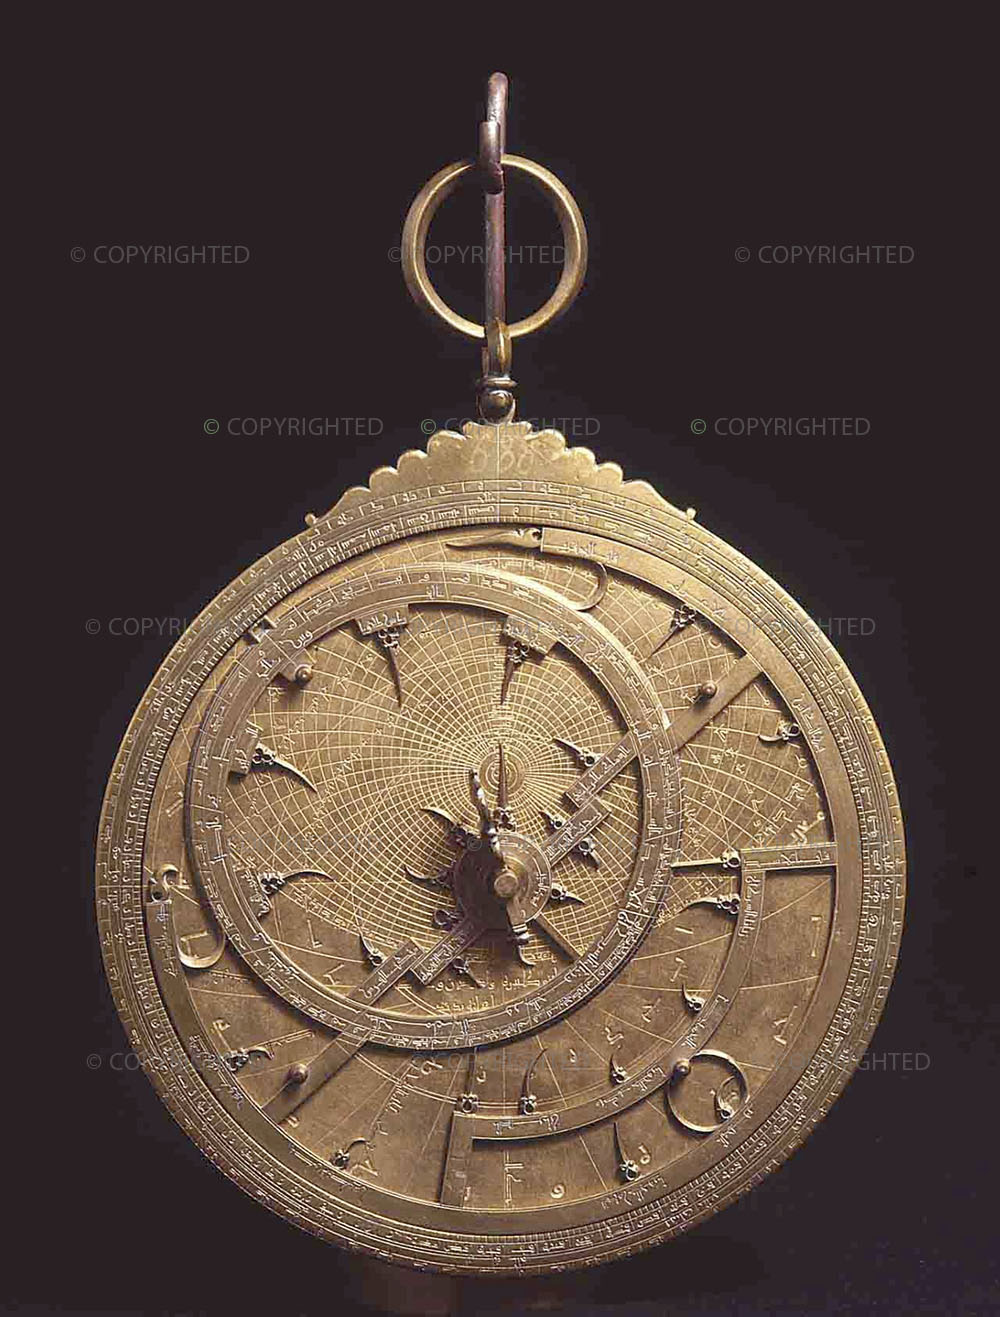 Ibrahim ibn Saîd, Arab astrolabe